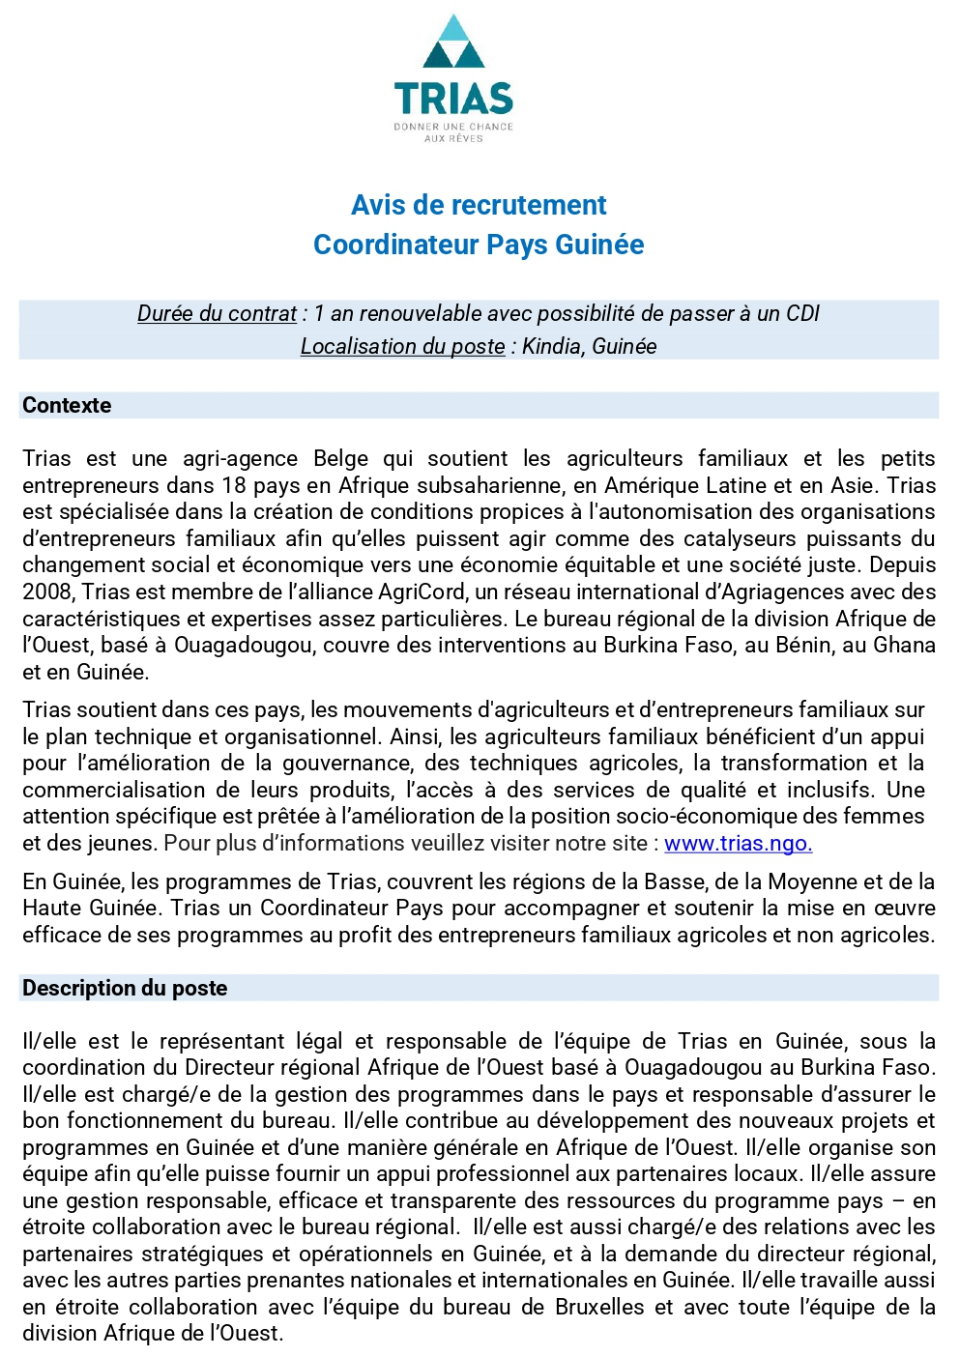 Avis de recrutementd'un Coordinateur Pays Guinée | Page 1